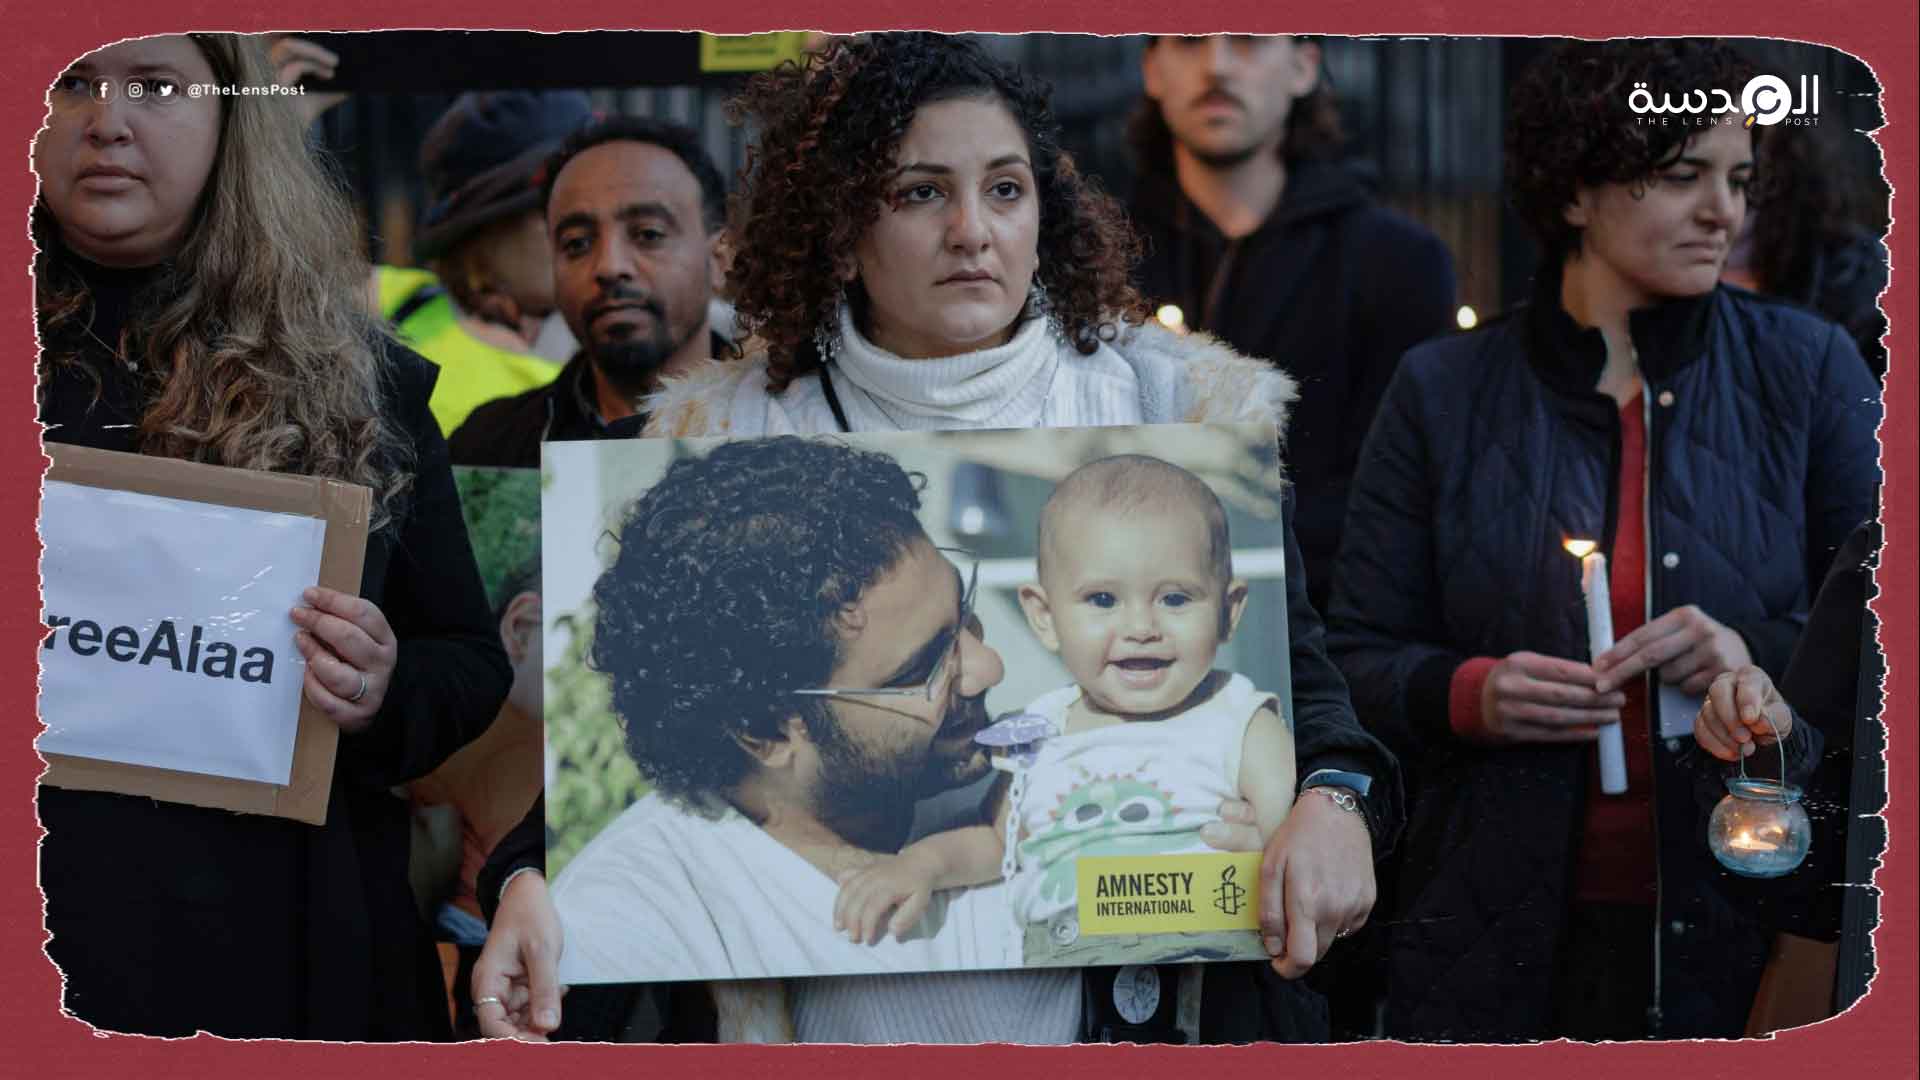 "إهانة غير مقبولة": مصر ترفض مطالب أممية متعلقة بالمعتقلين